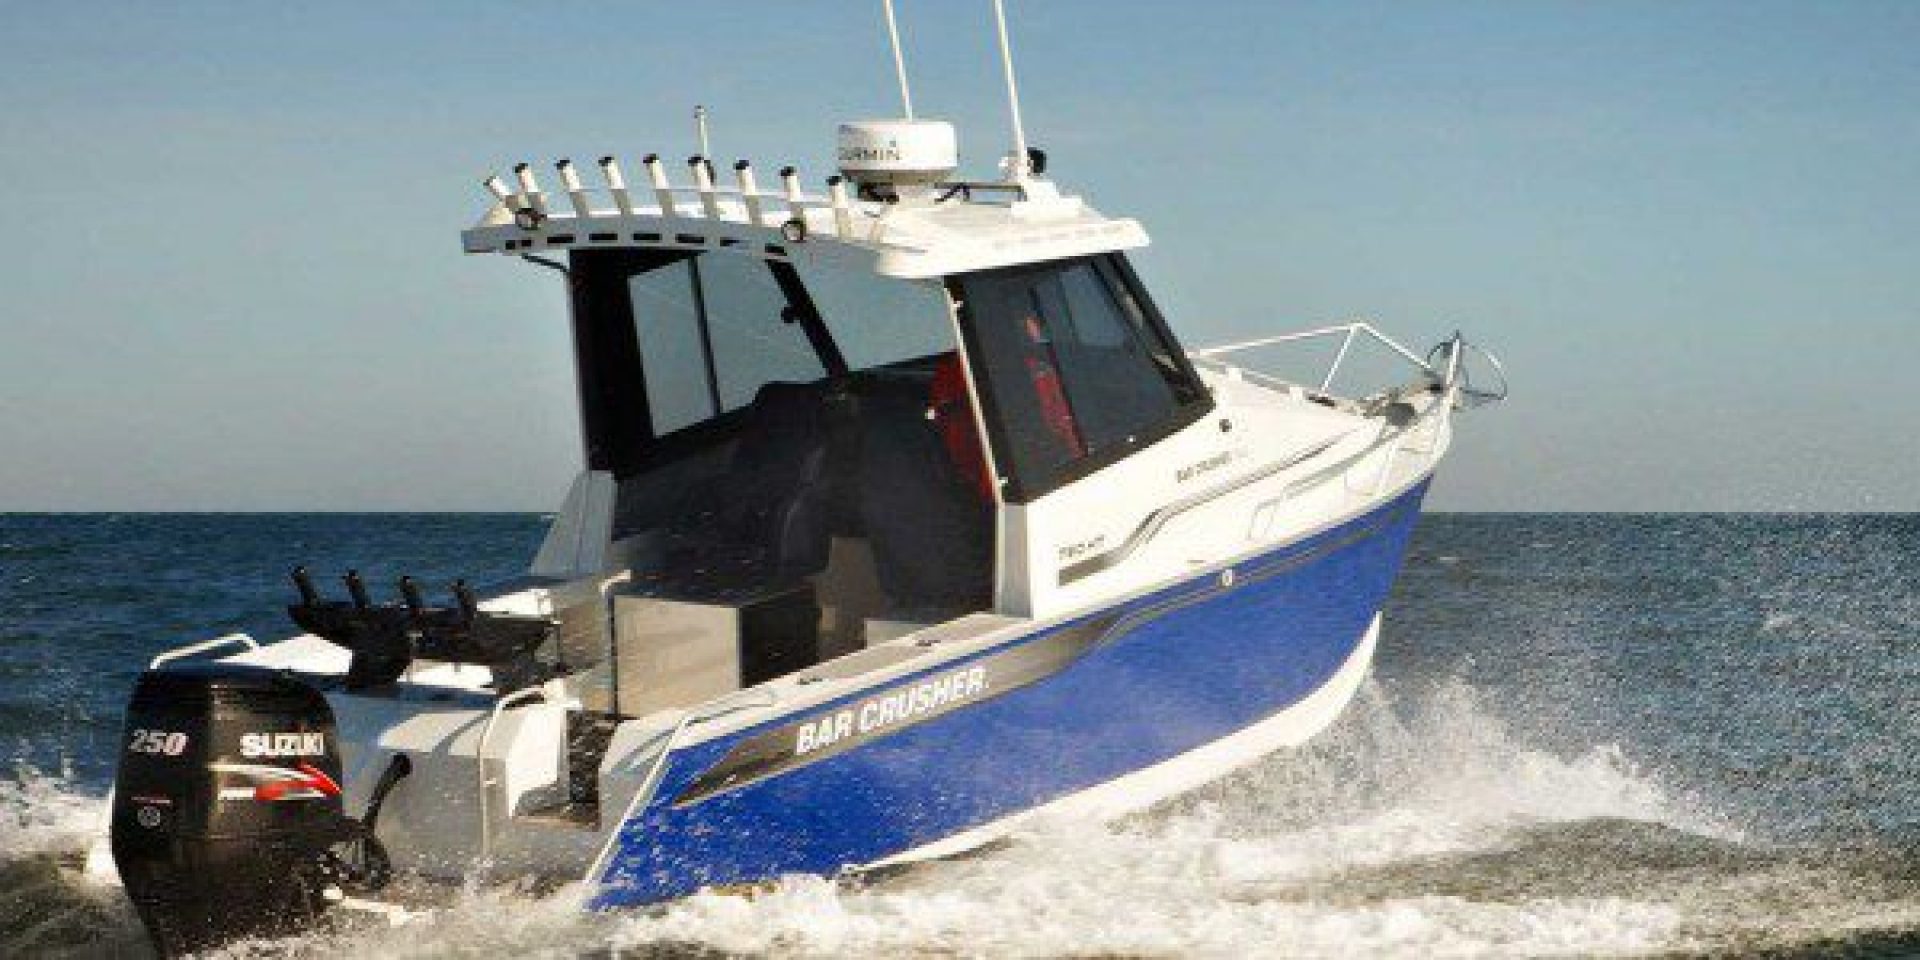 Barcrusher-thumbnail-boat-600x300